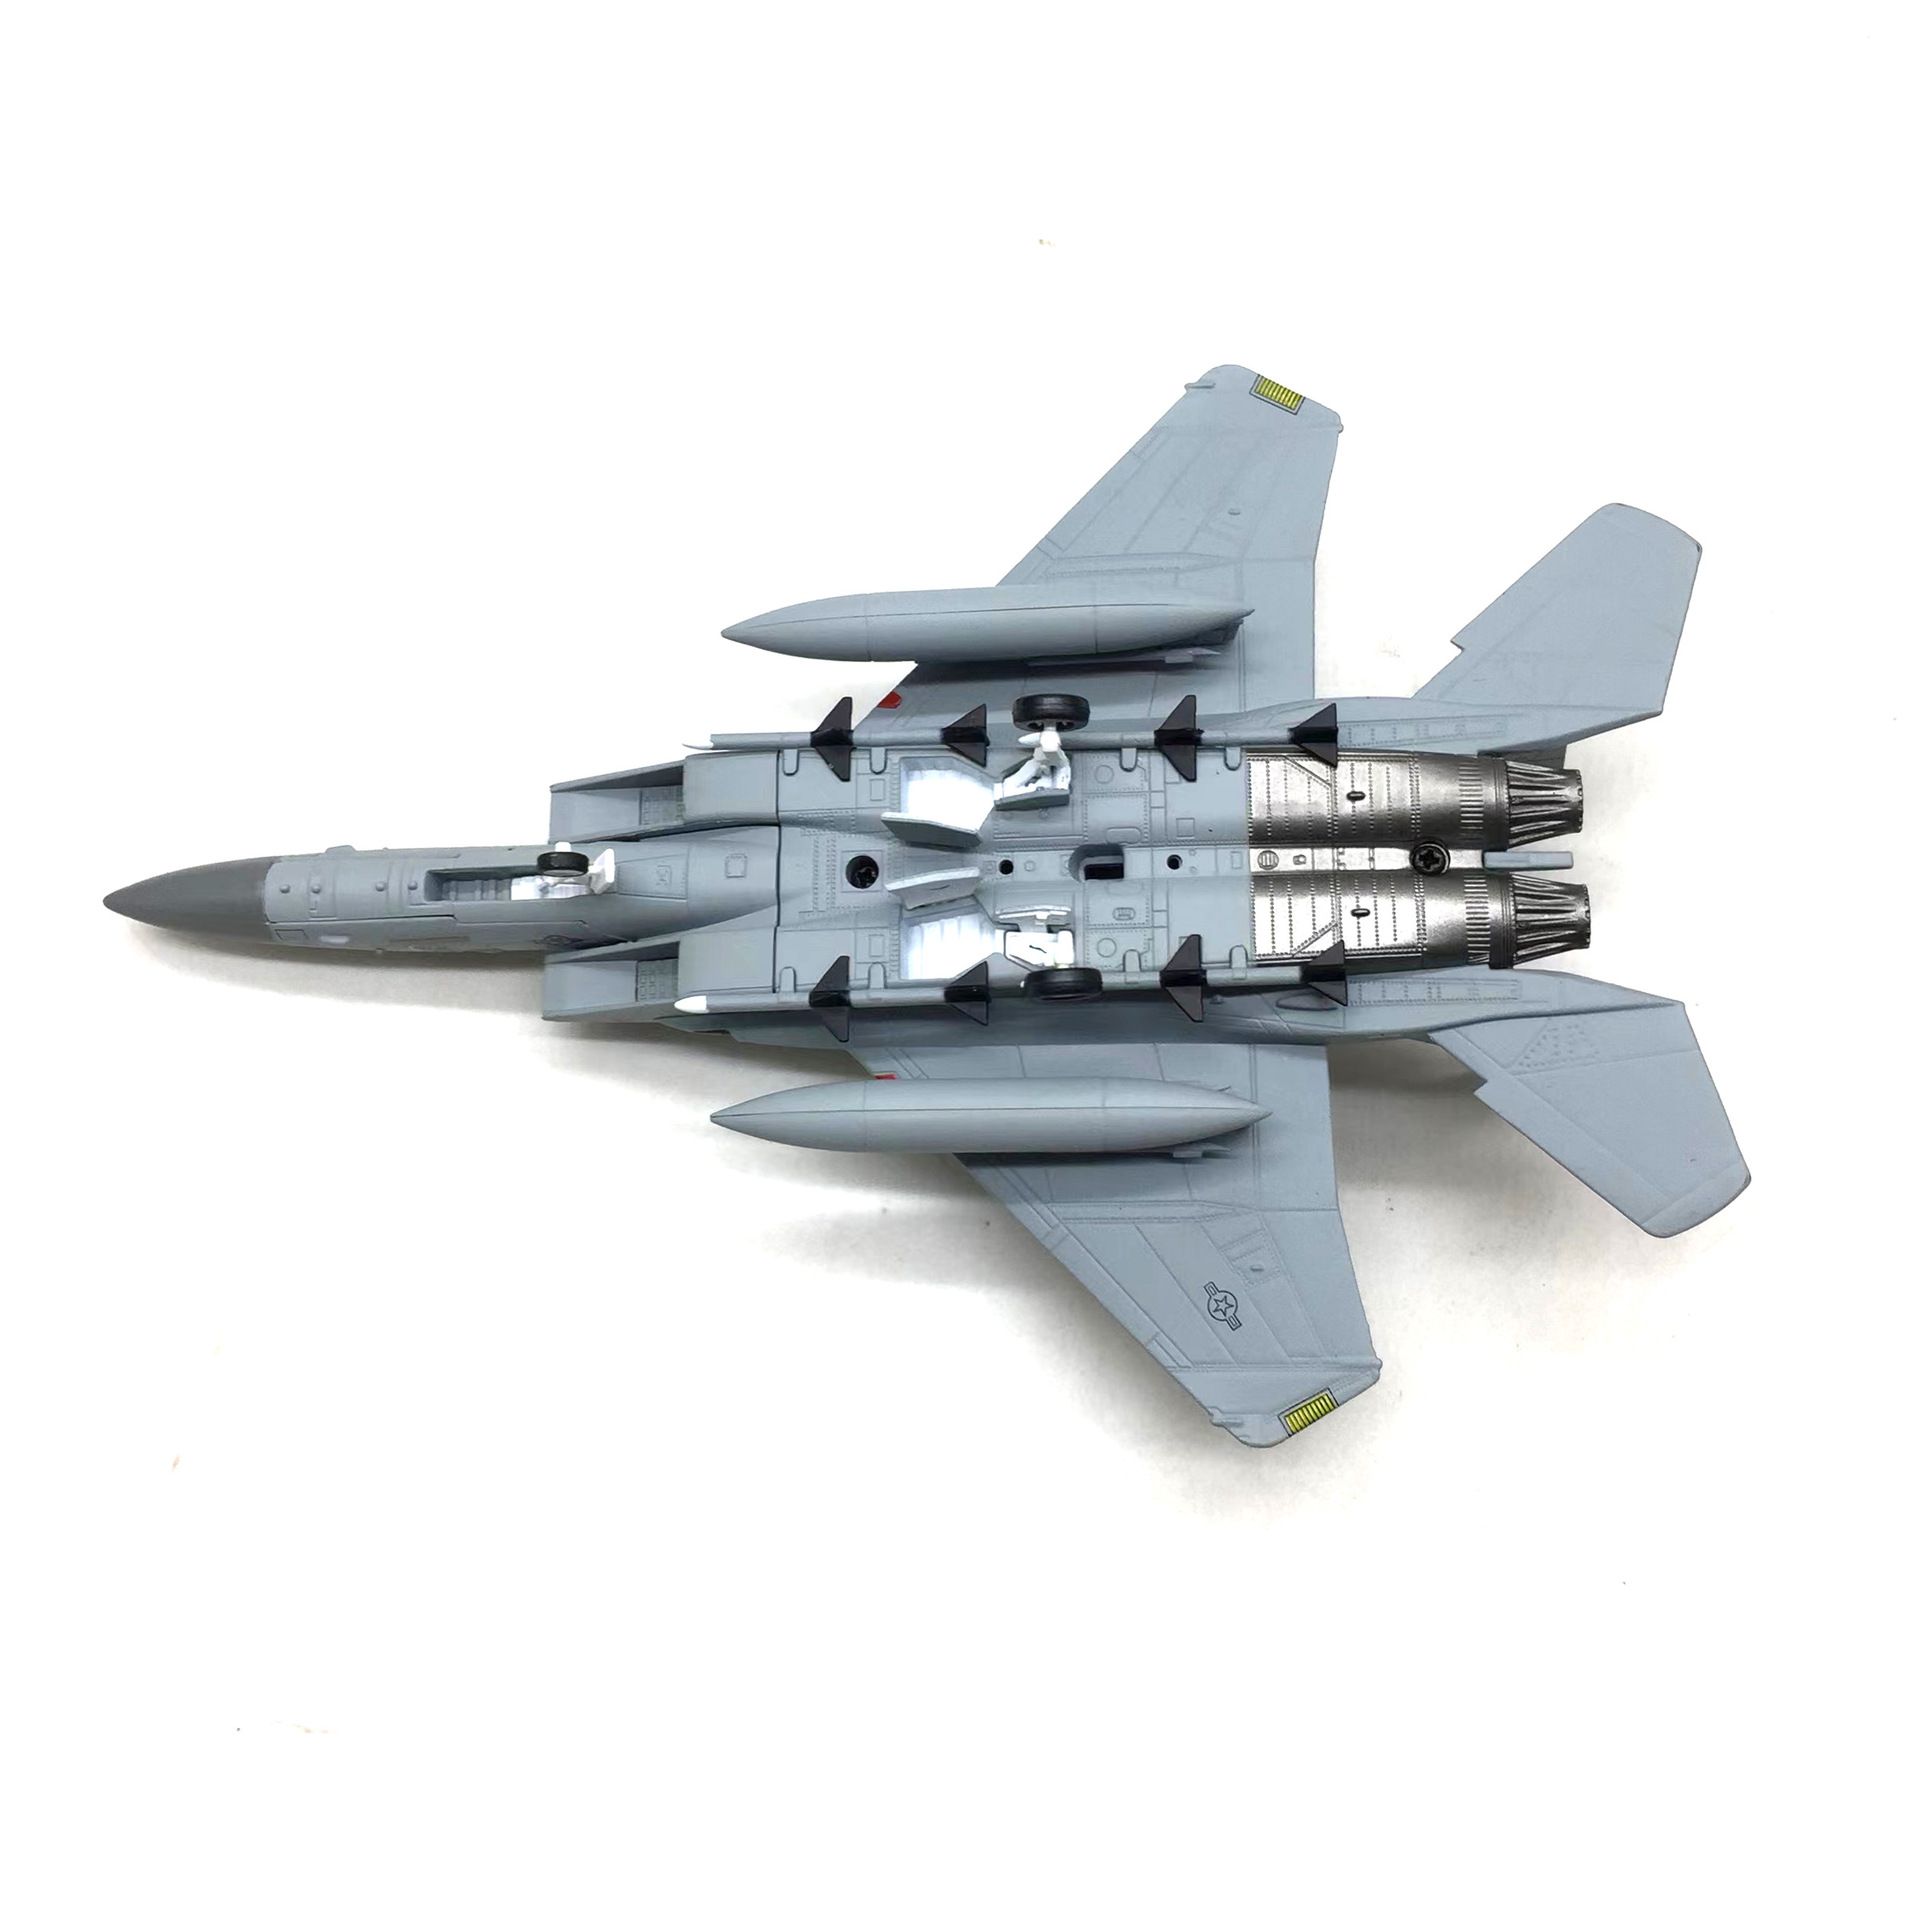  Mô hình máy bay chiến đấu American USA F-15C Eagle 33rd tỉ lệ 1:100 Ns models MBQS048 